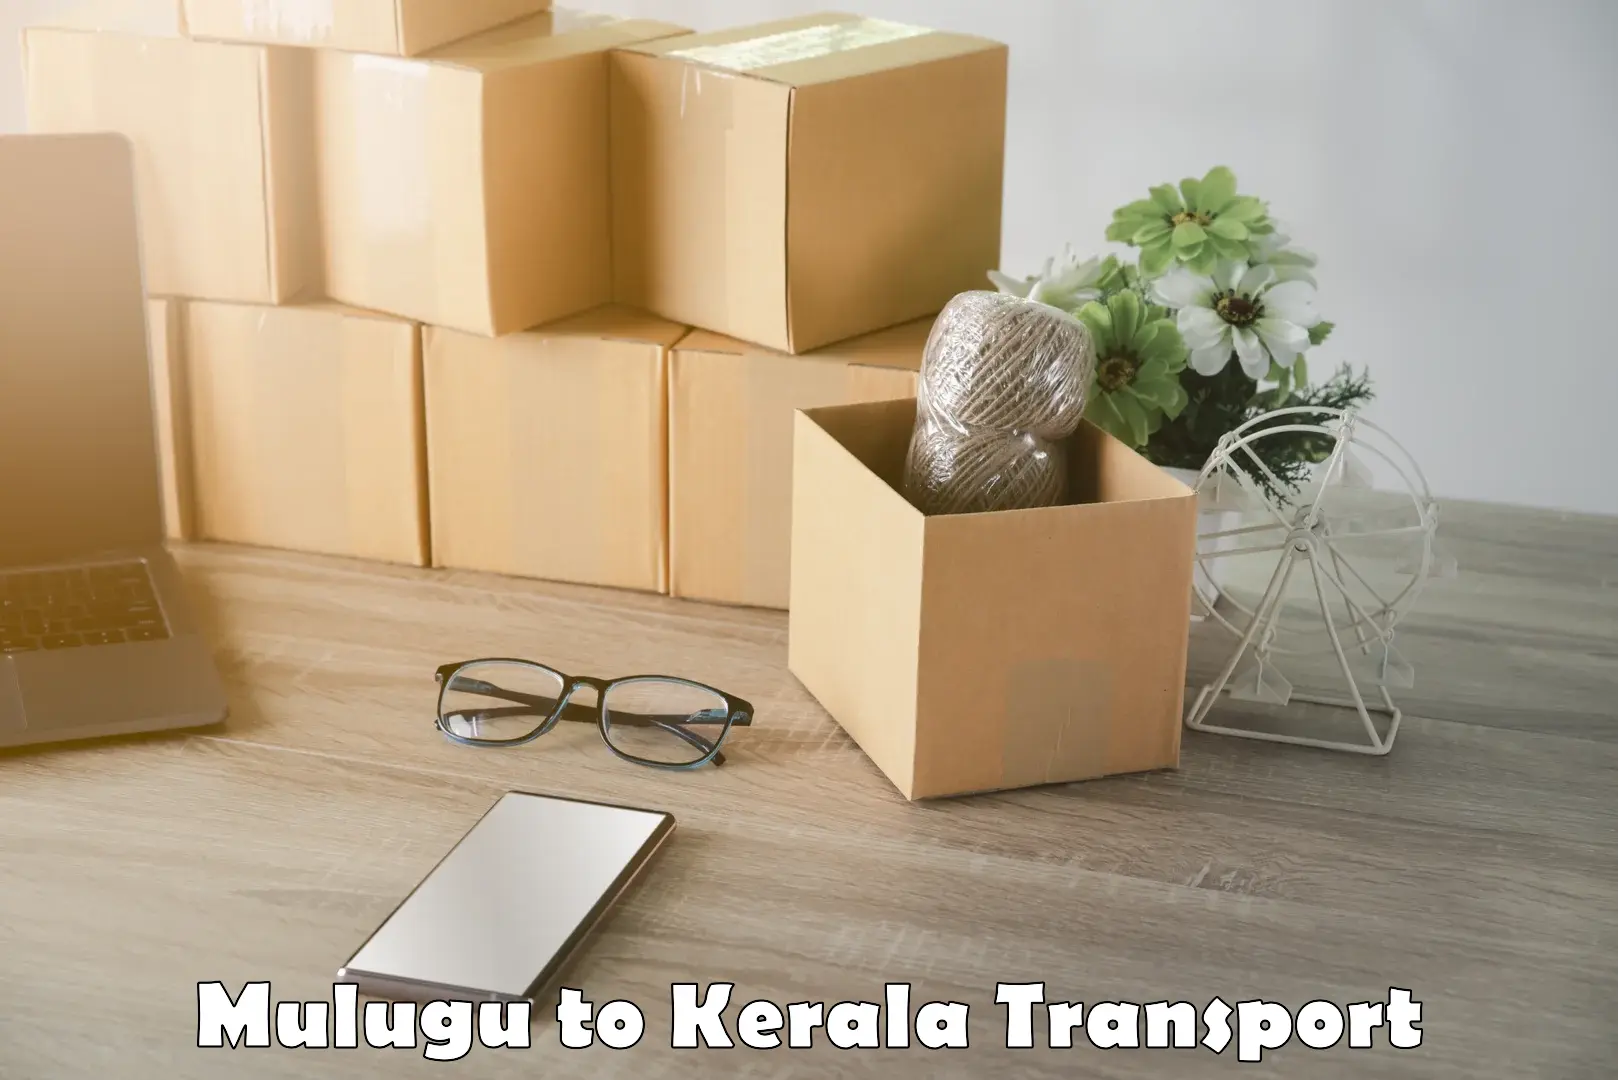 Pick up transport service Mulugu to Chalakudy